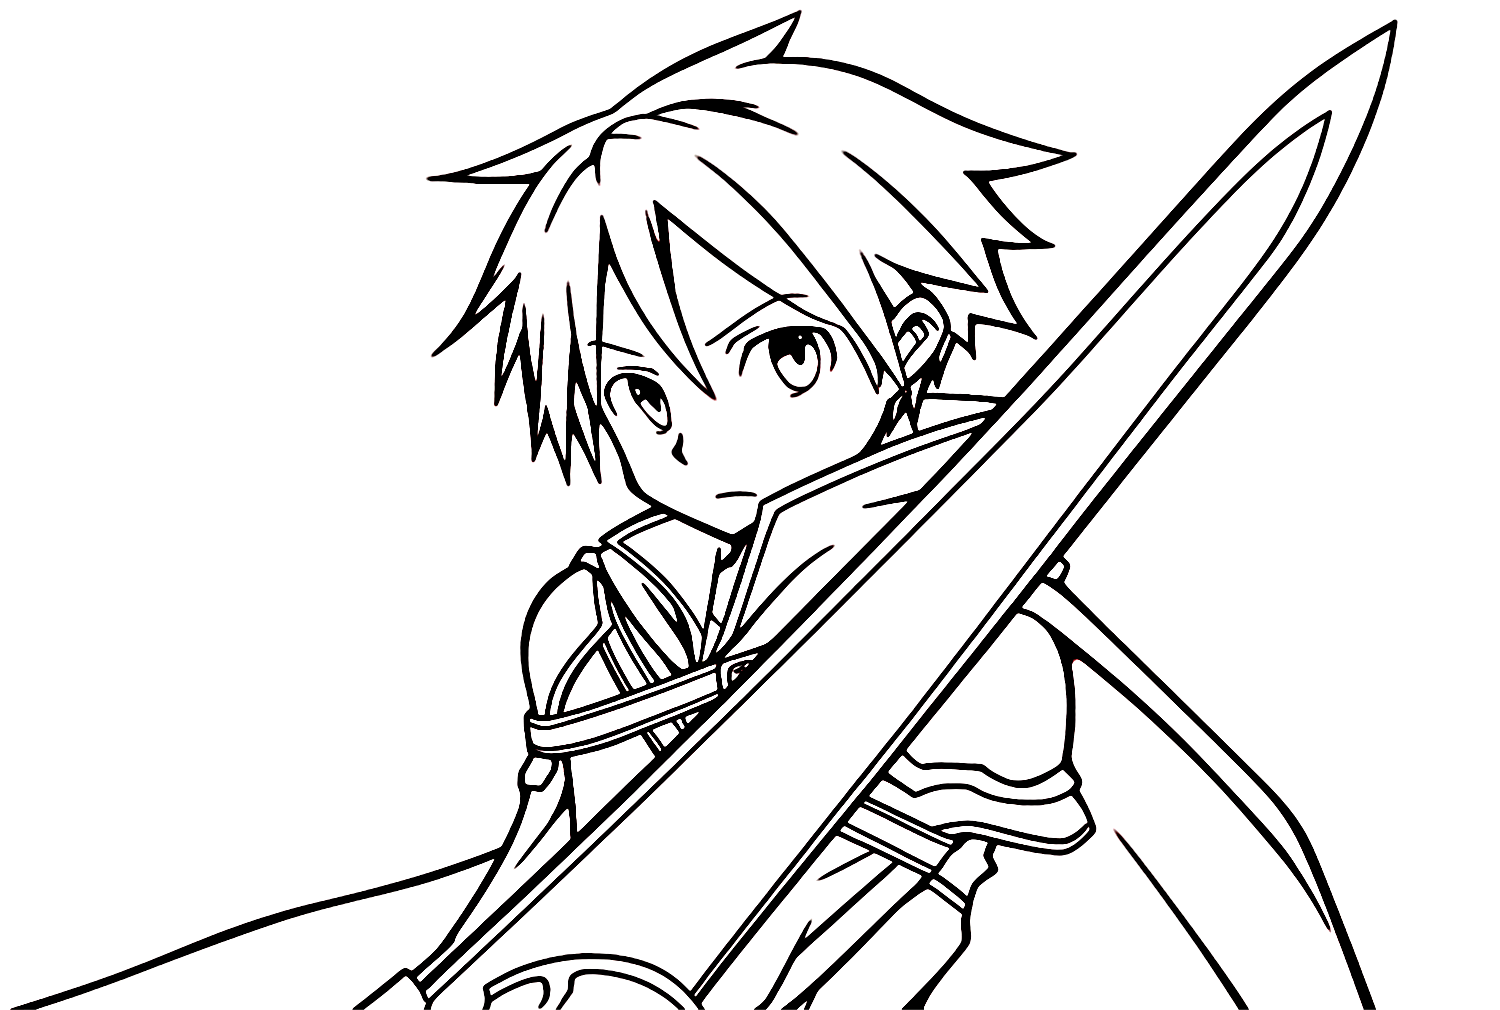 Kirito met zwaard van Kirito